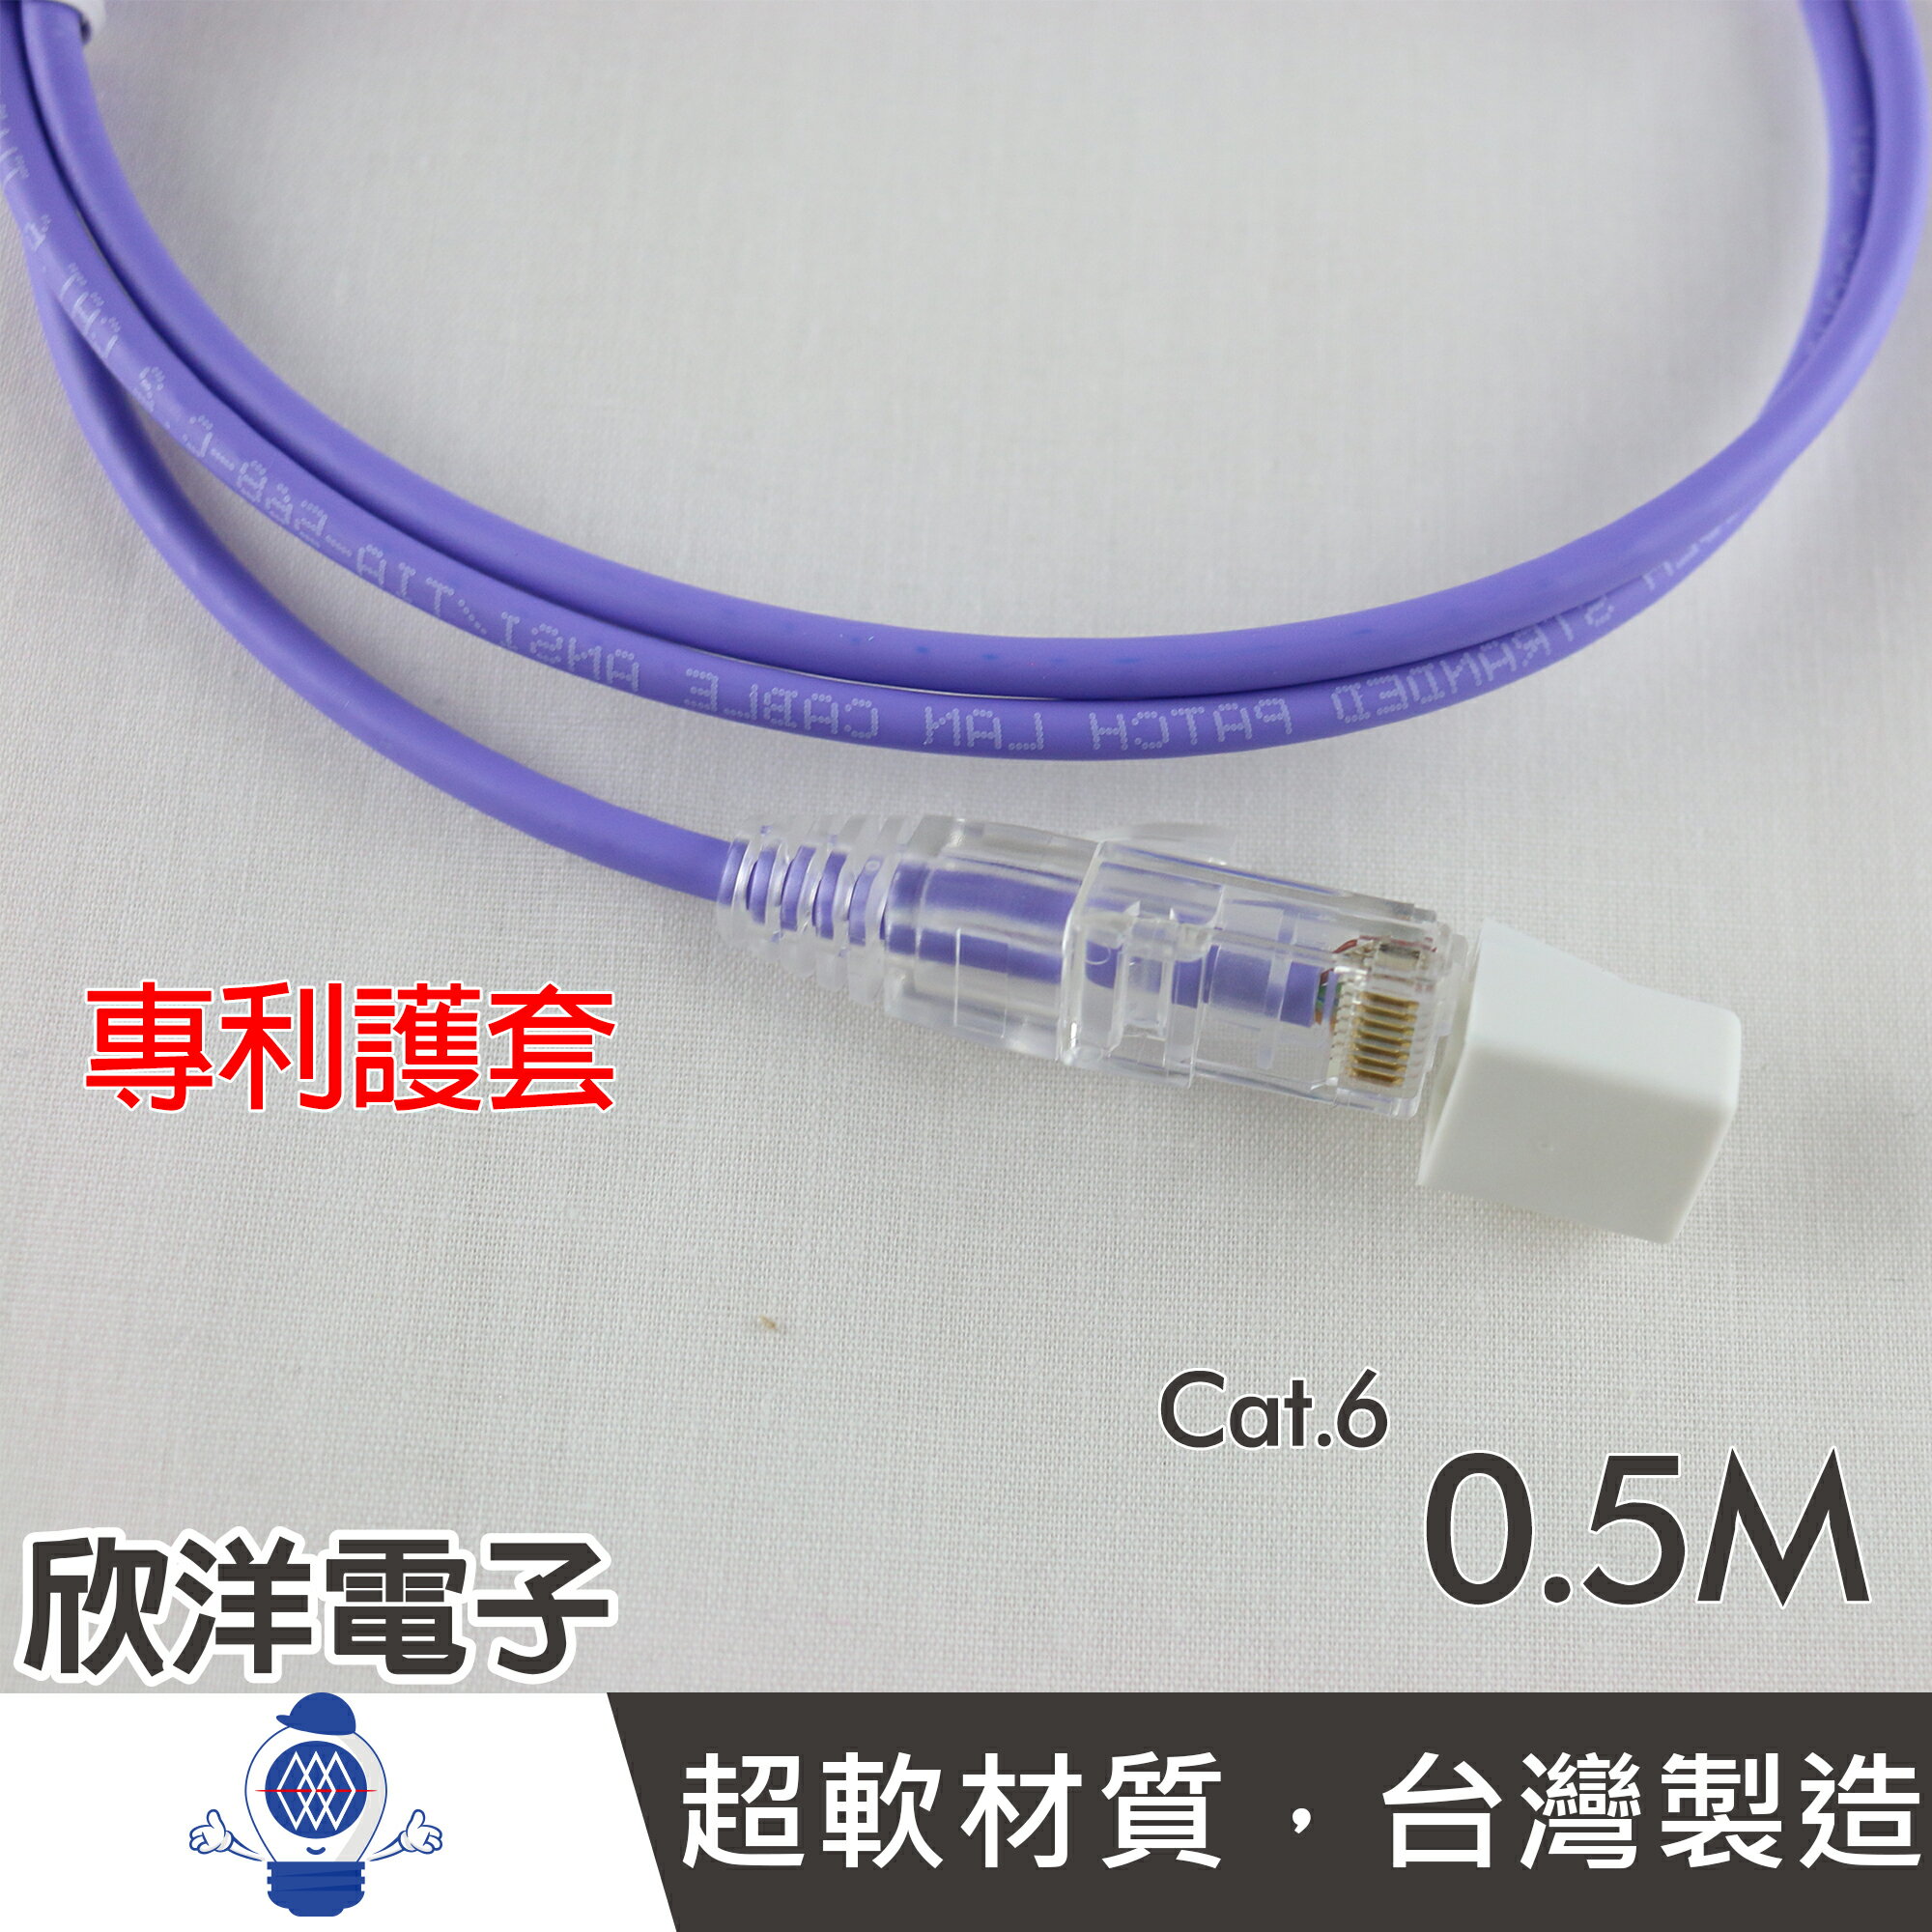 ※ 欣洋電子 ※ TWINNET COBRA Cat.6超細網路線(02-01-60005) 0.5M / 0.5米 測試報告/台灣製造/GIGA